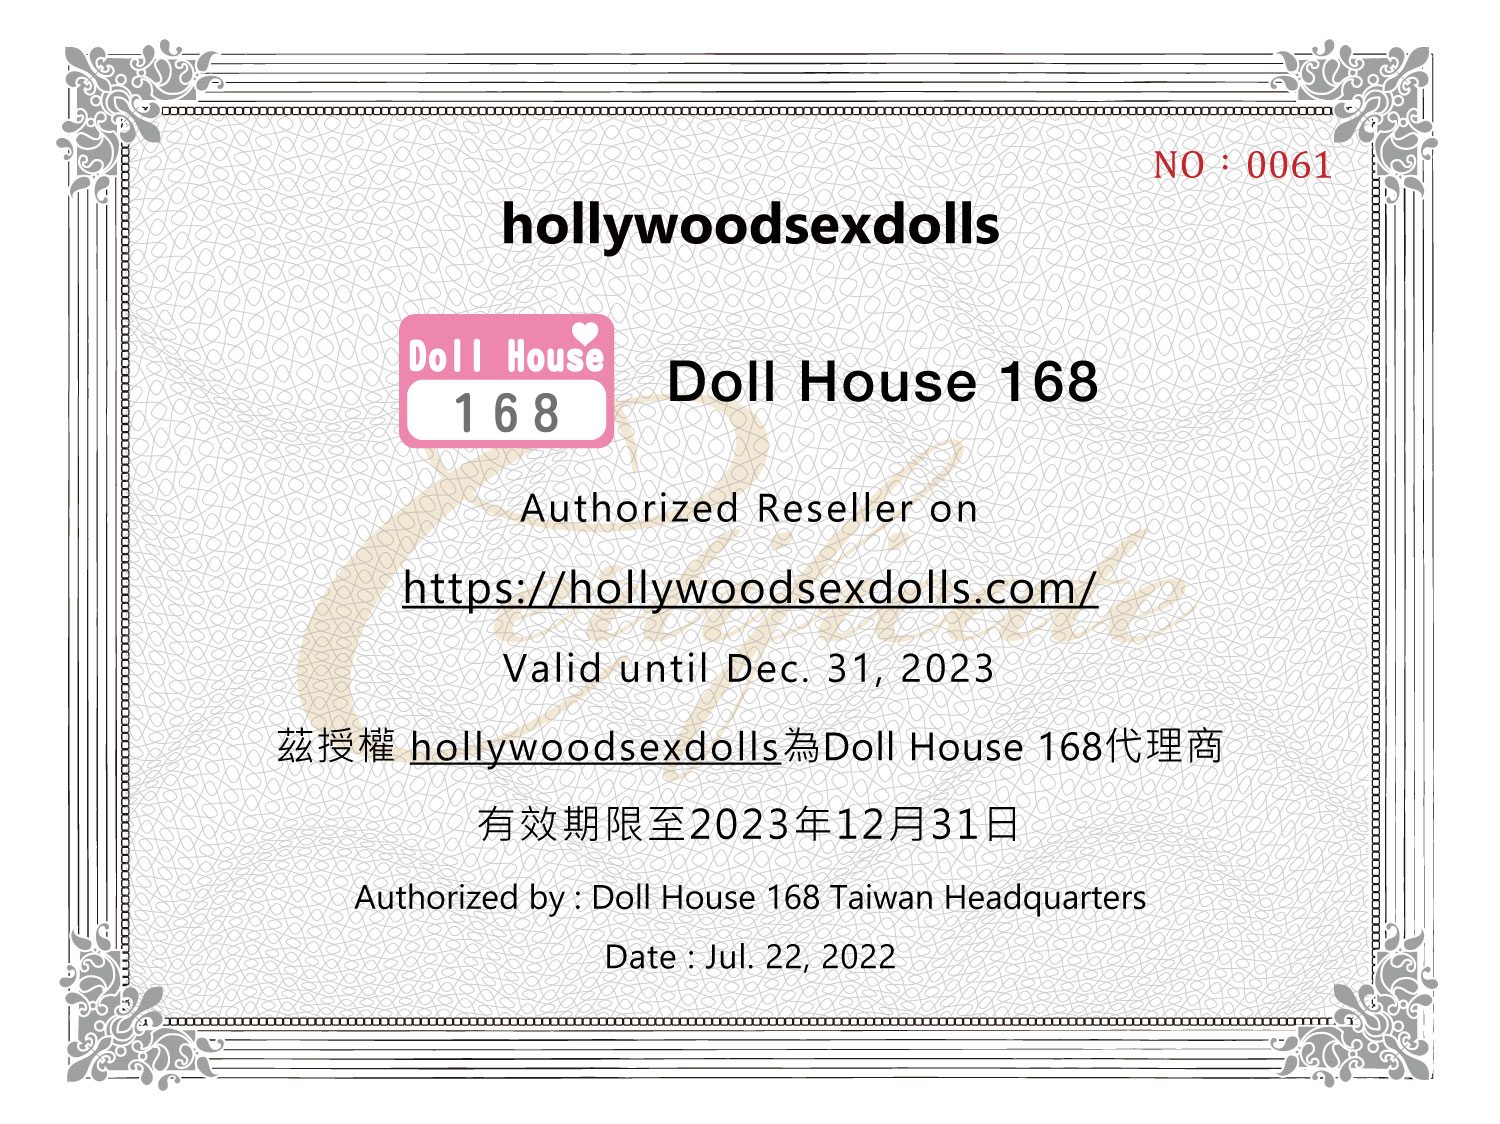 Doll house 168